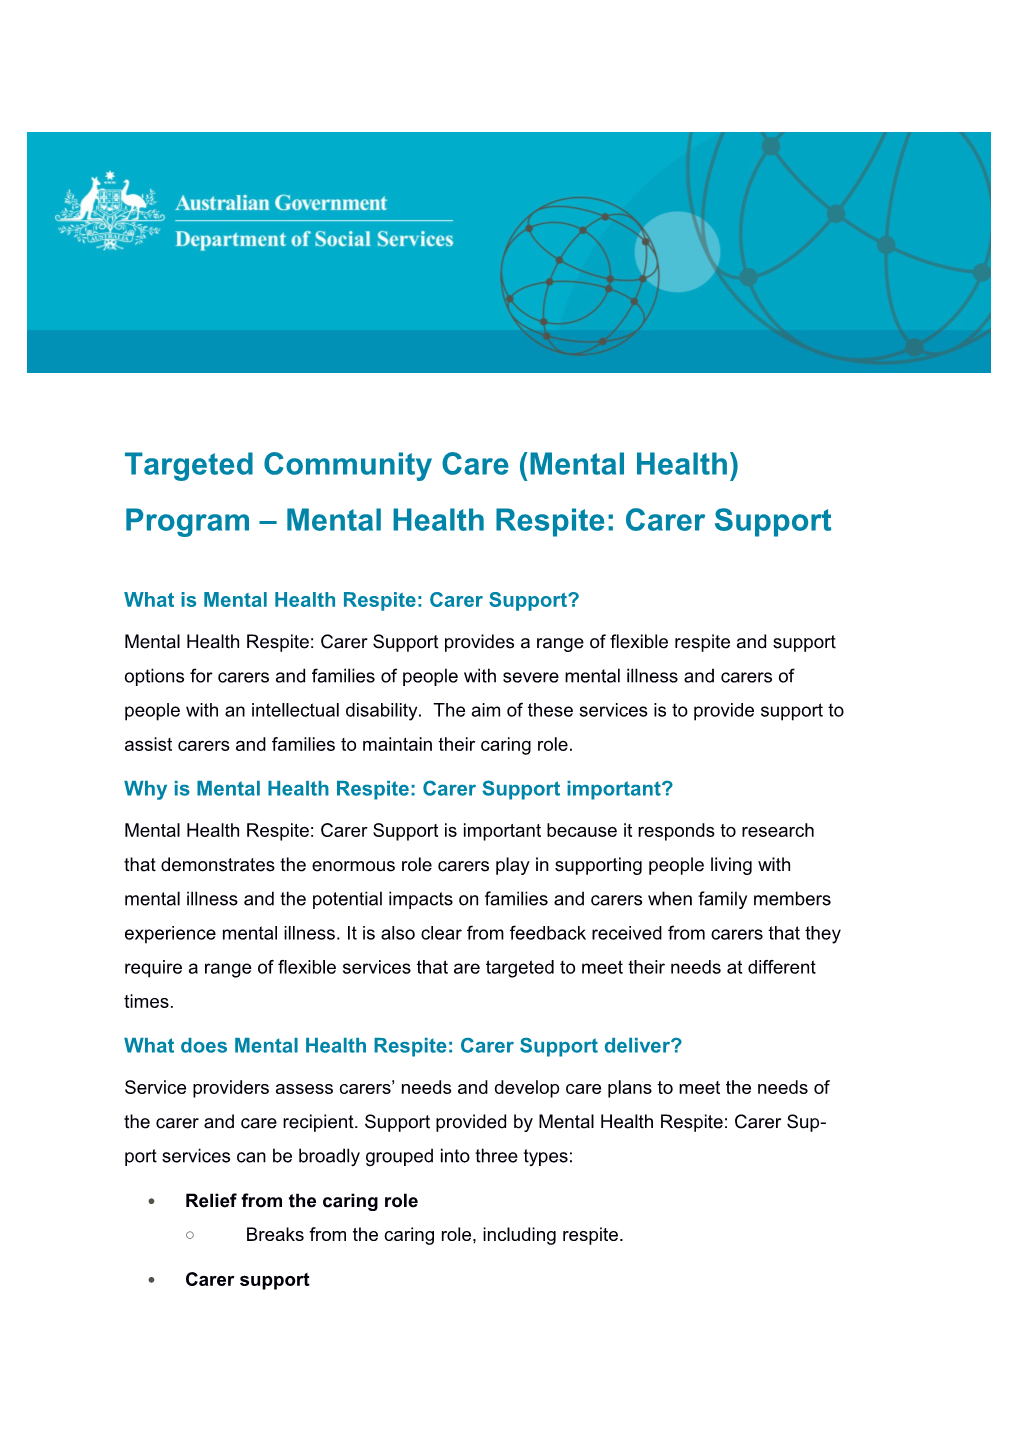 Targeted Community Care (Mental Health) Program Mental Health Respite: Carer Support